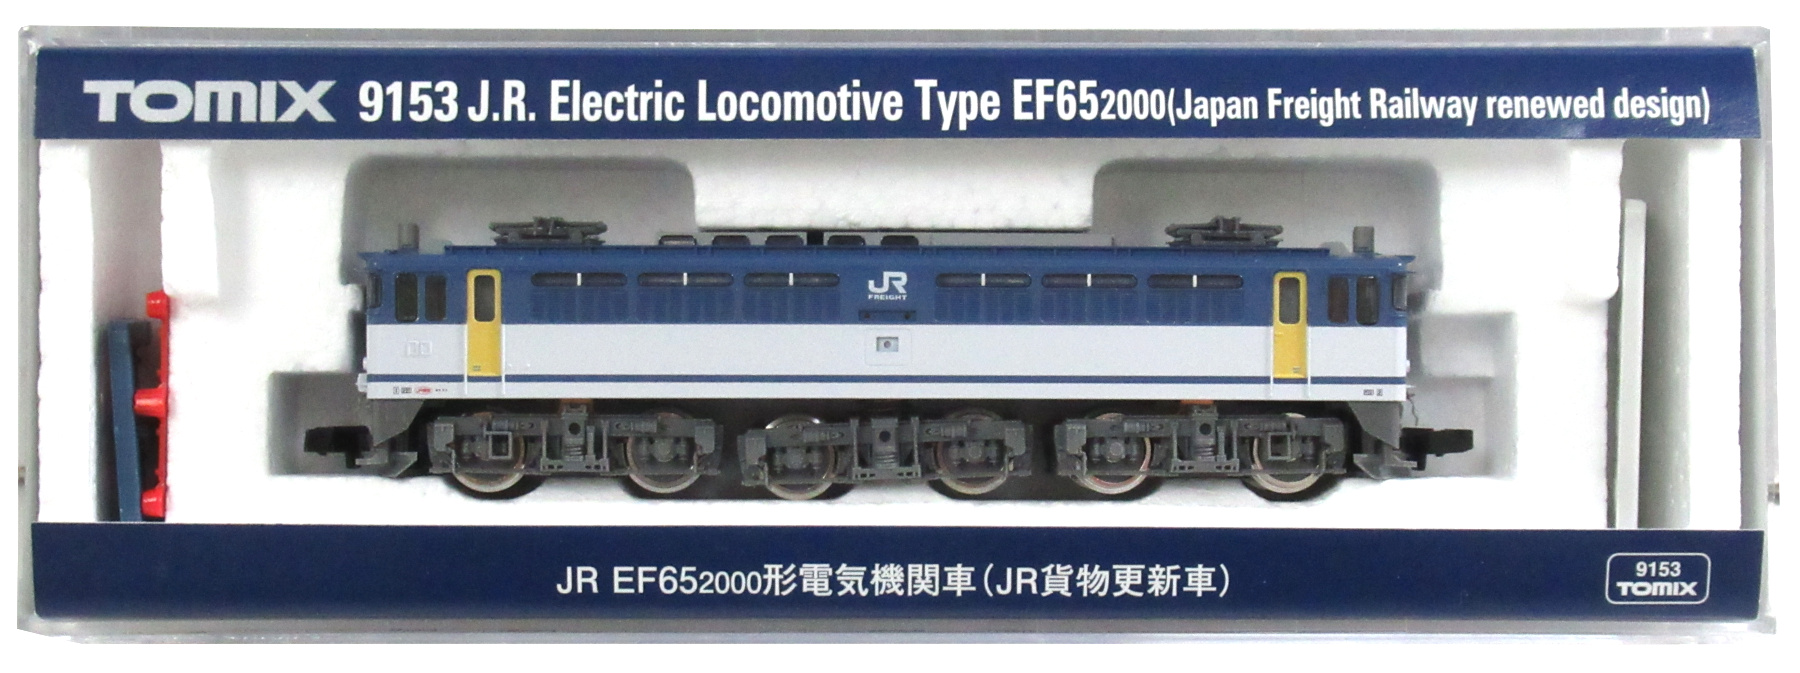 9153 EF65-2000 JR貨物更新車